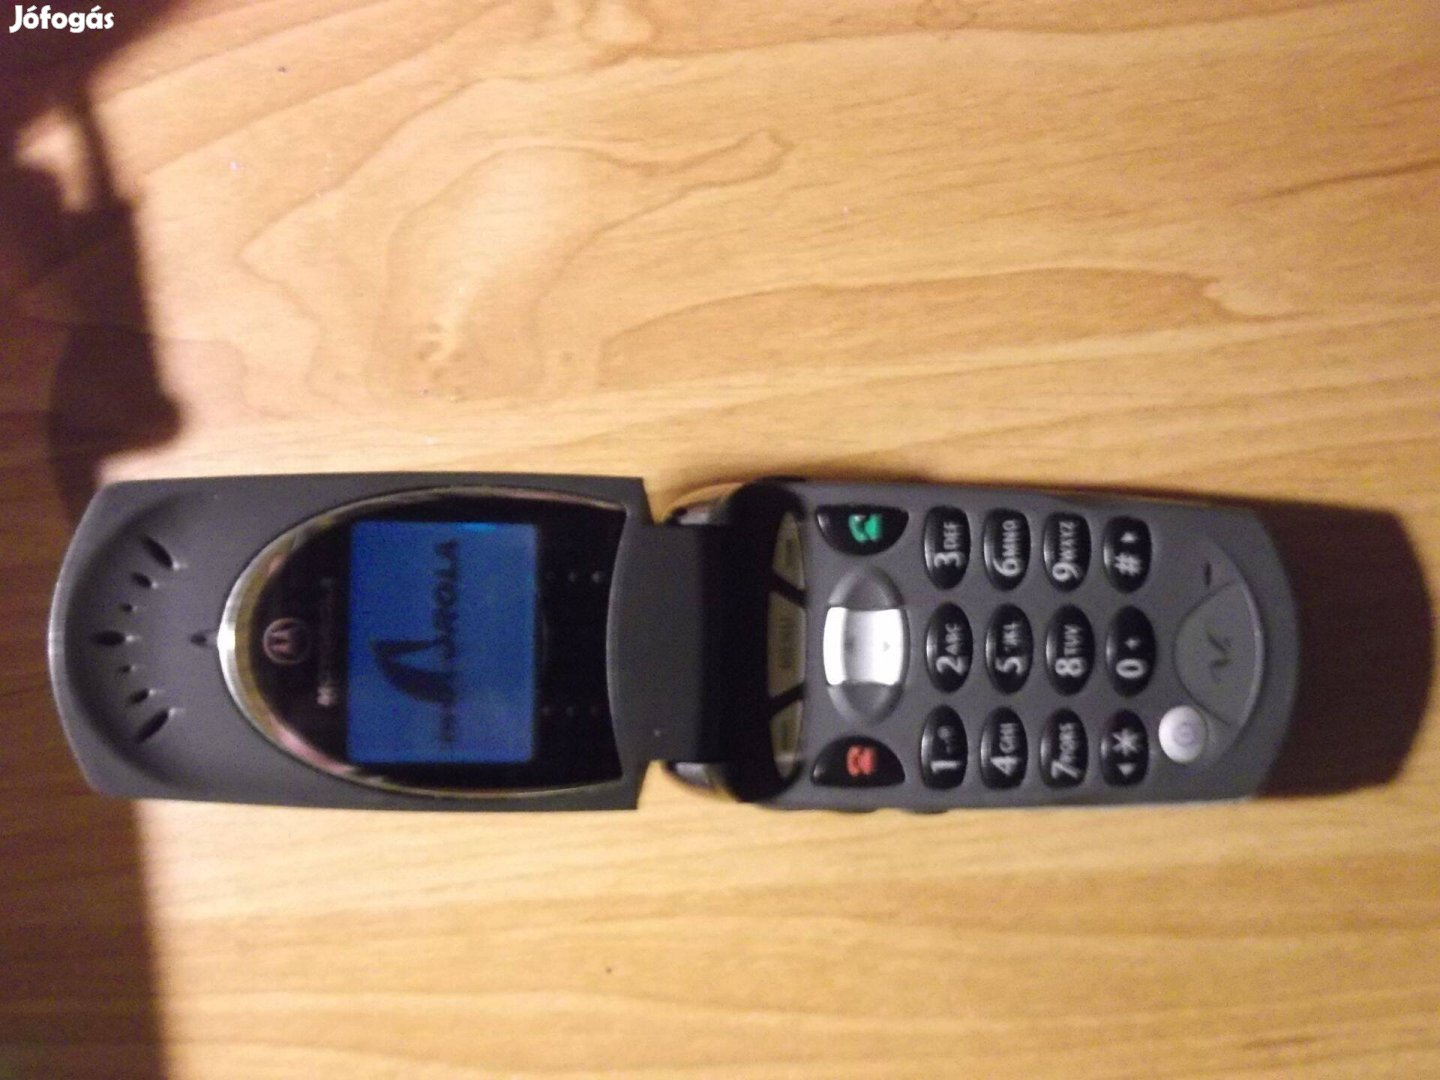 Eladó egy Motorola V 60 típusú készülék, ami biztonsági kódot kér